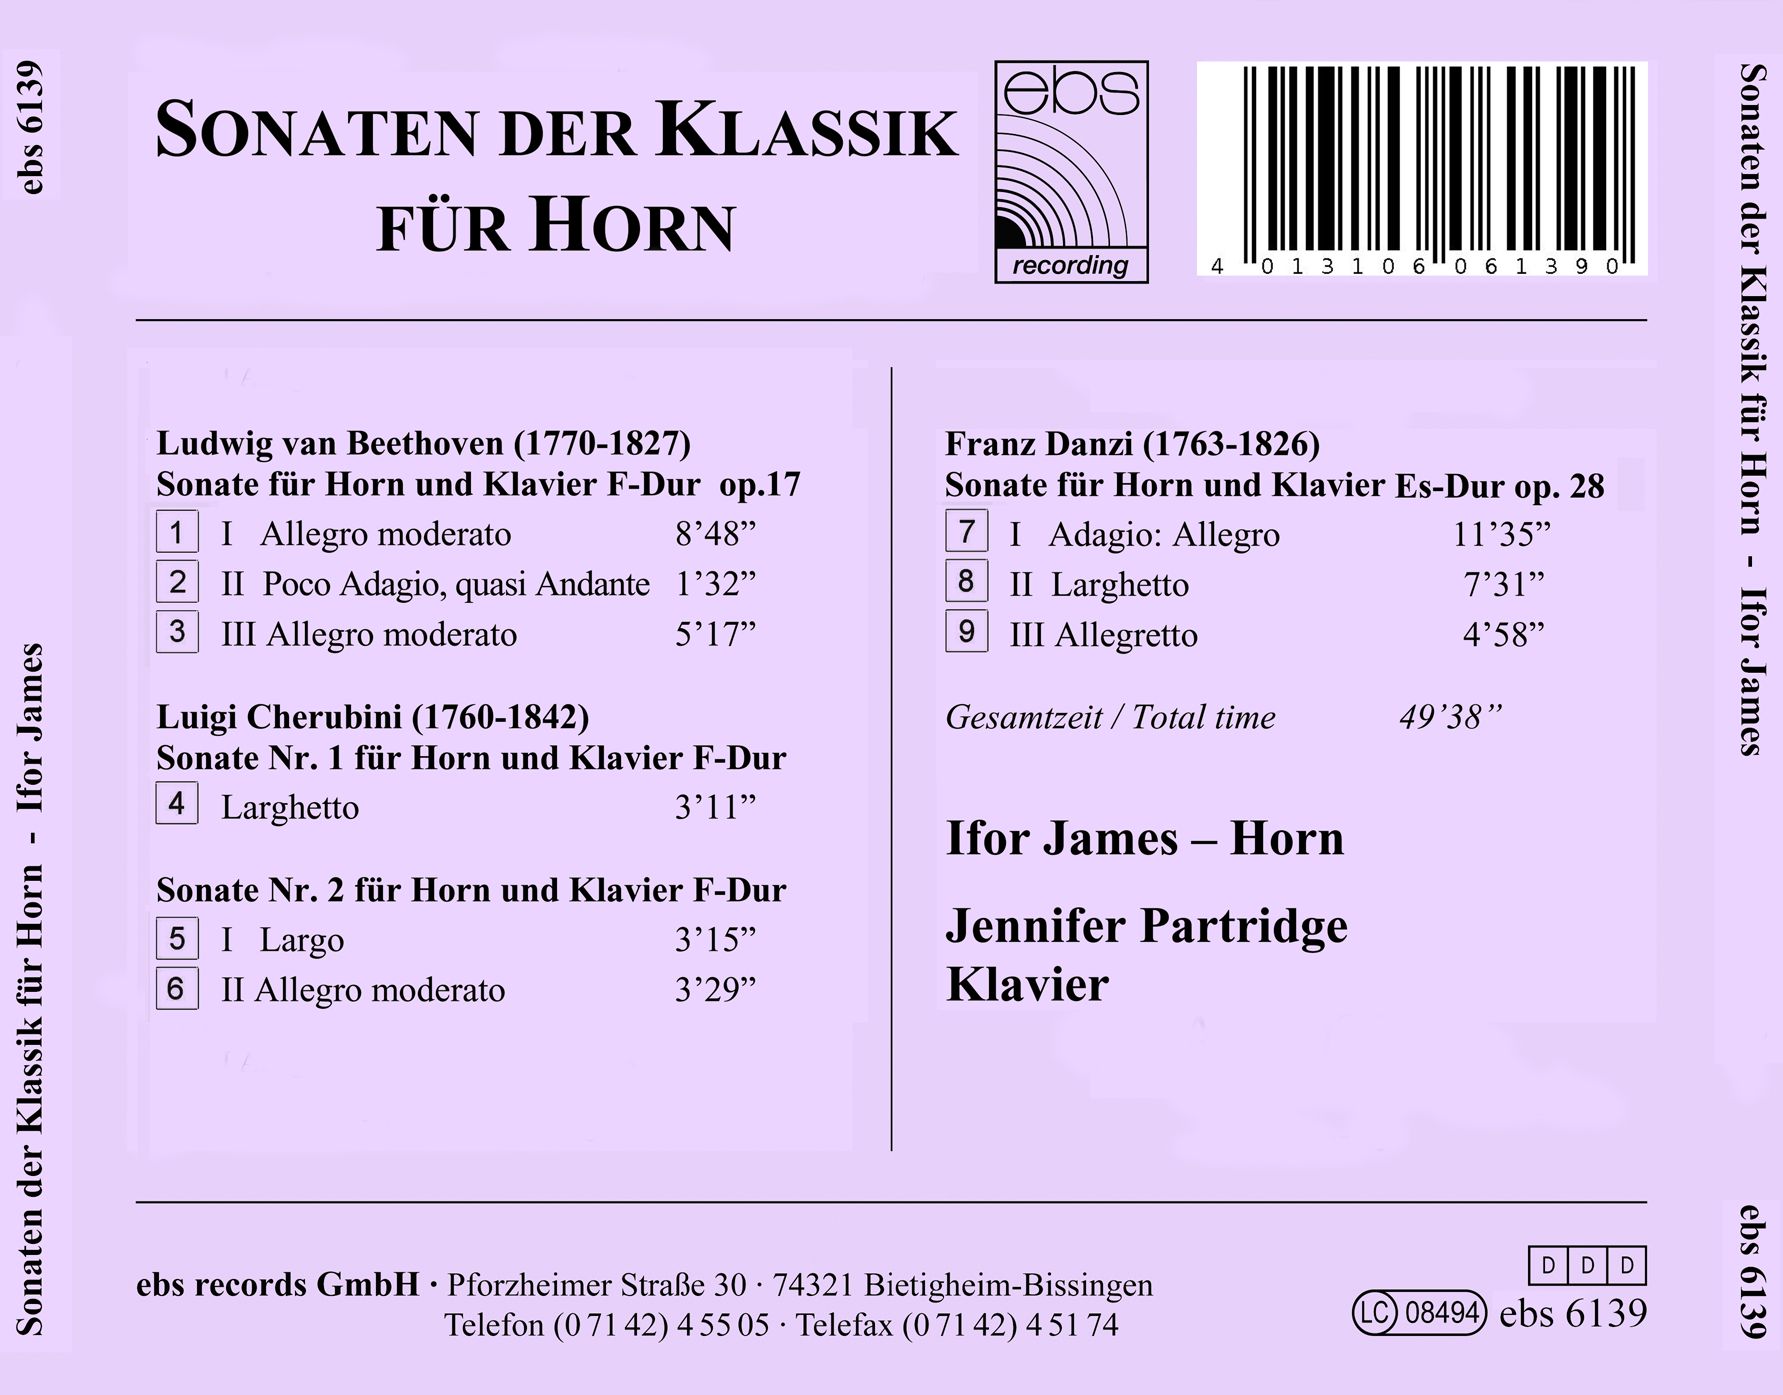 Sonaten der Klassik für Horn